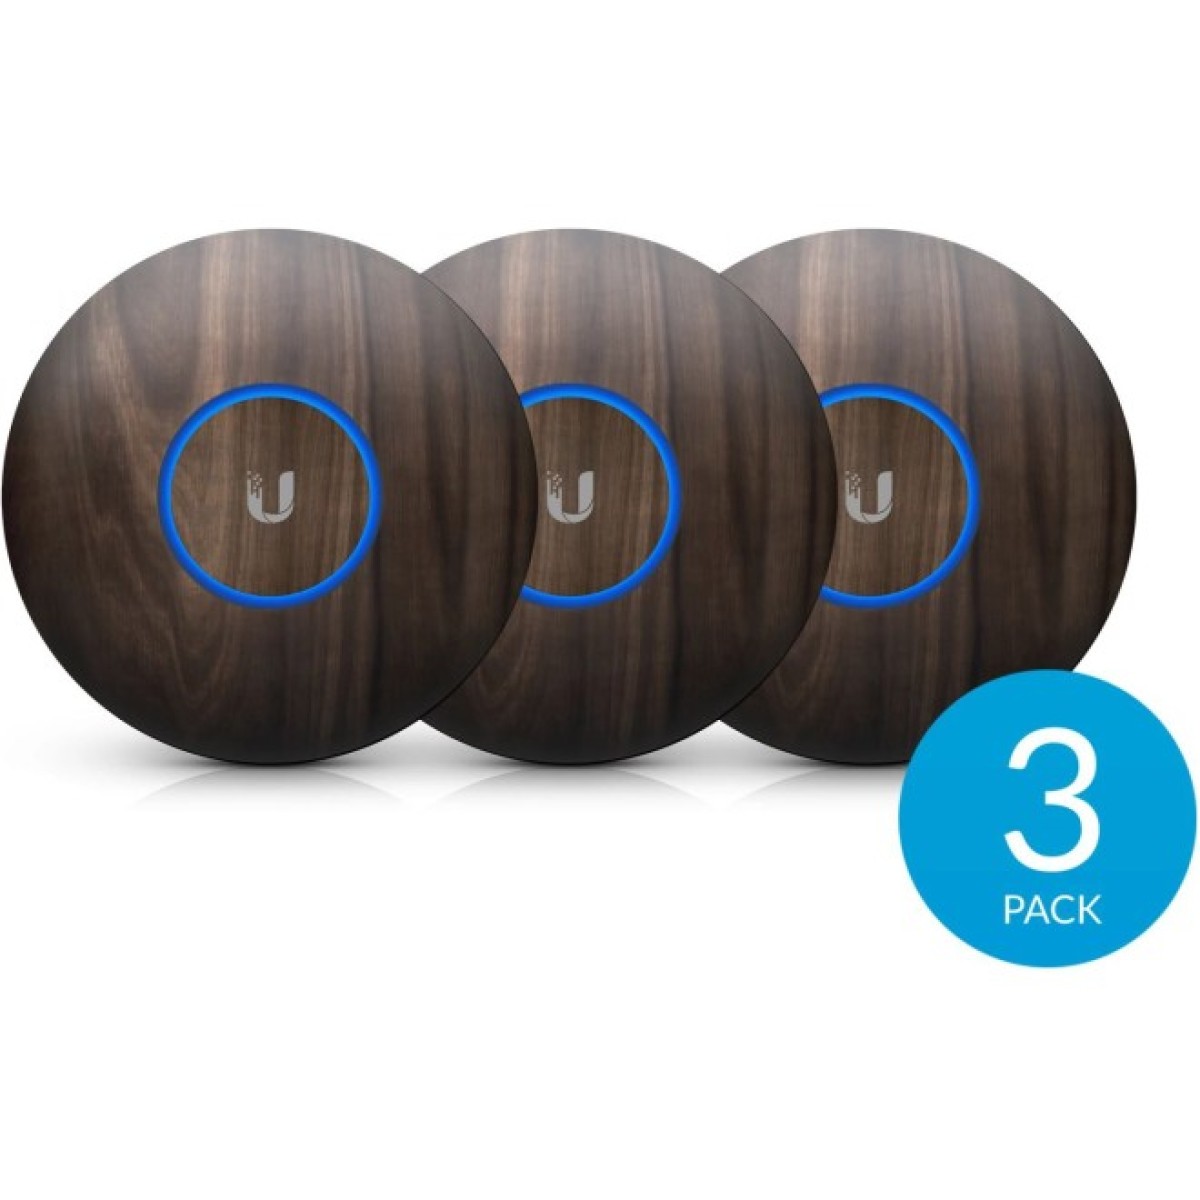 Декоративная накладка на точку доступа Ubiquiti UniFi AP nanoHD Wood Design, 3-Pack (nHD-cover-Wood-3) 256_256.jpg